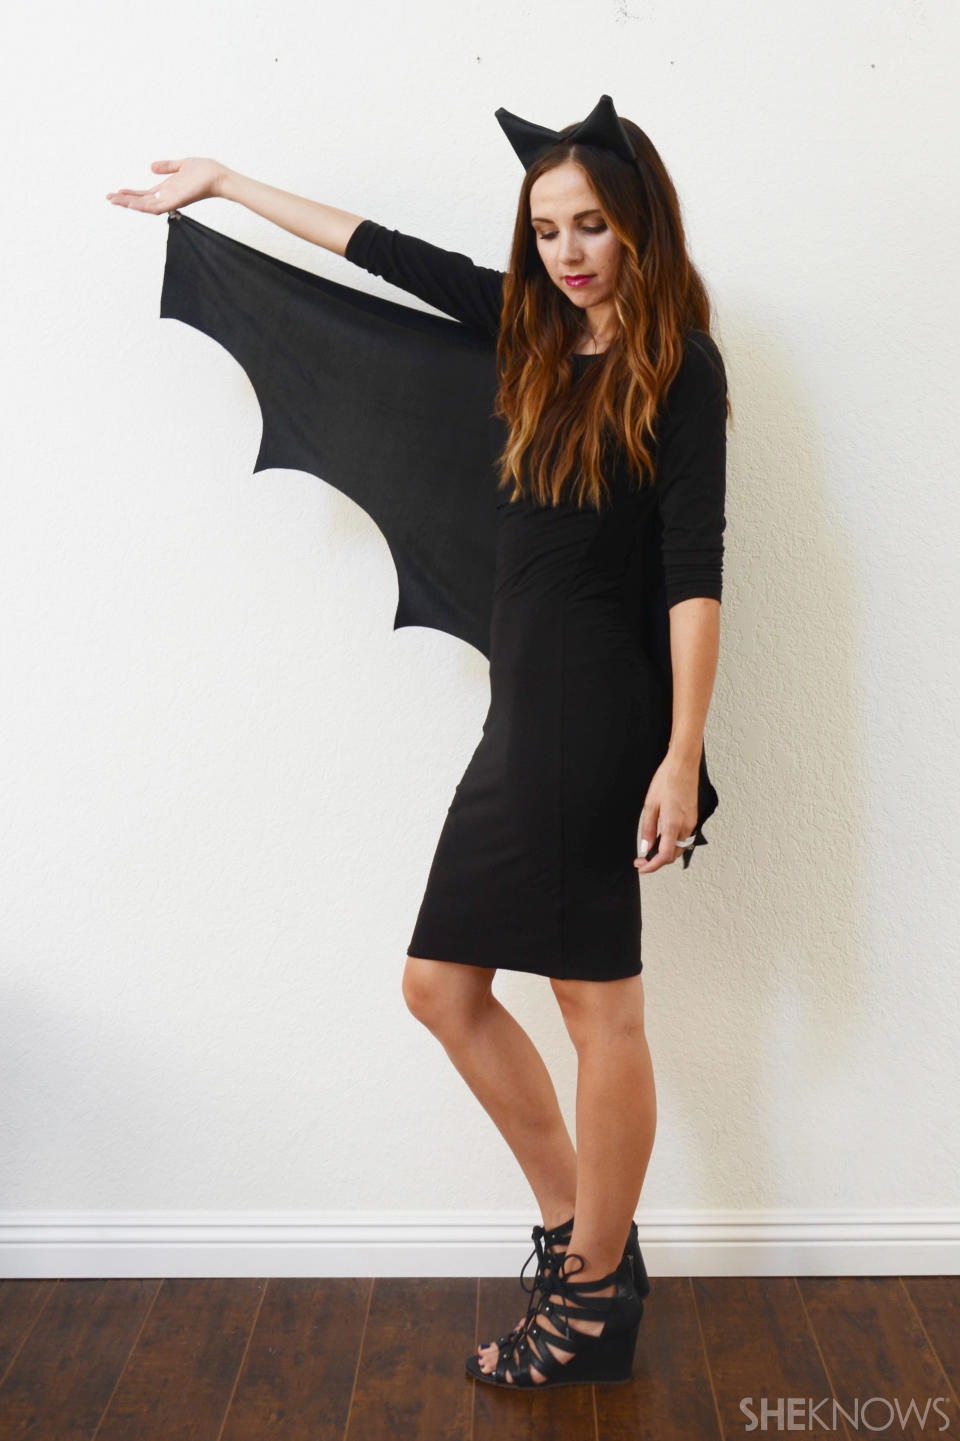 Bat costume